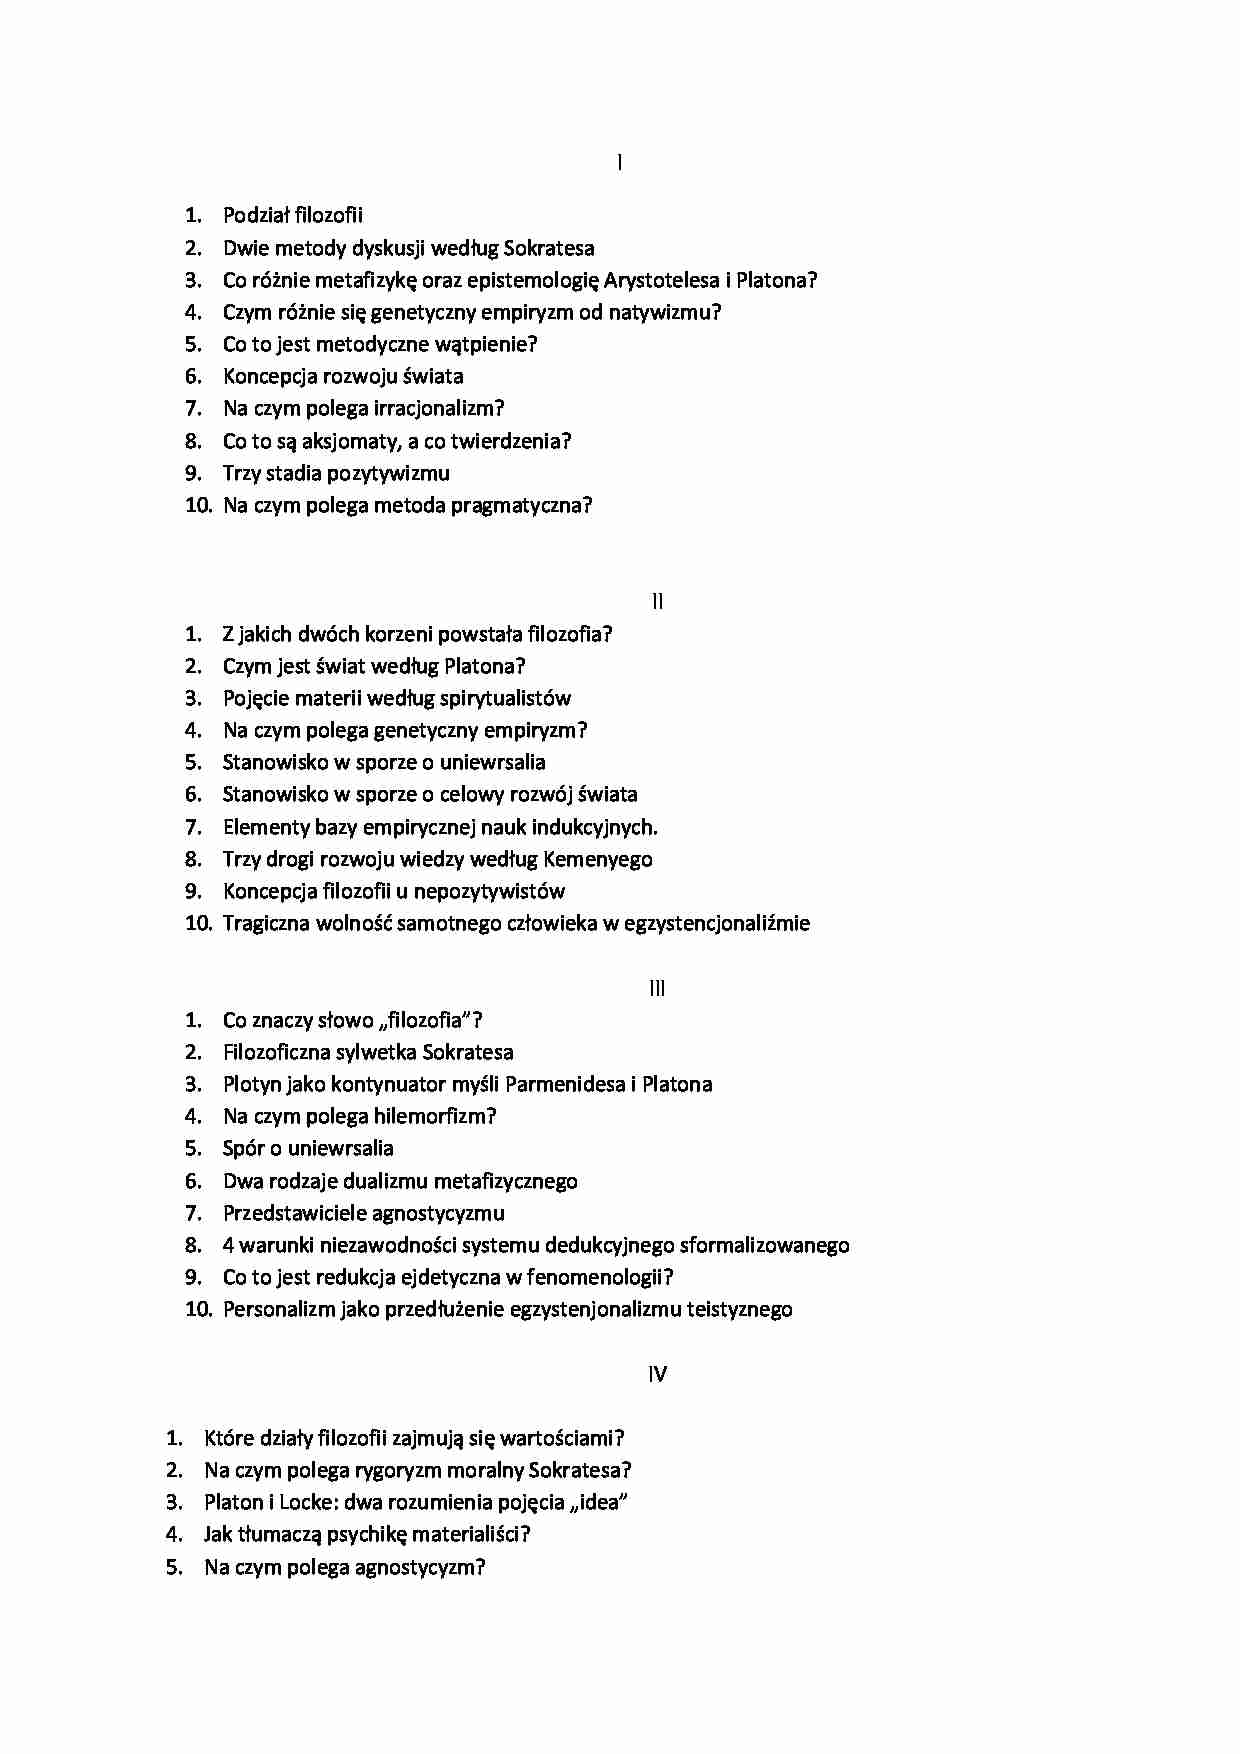 Filozofia - pytania egzaminacyjne - strona 1